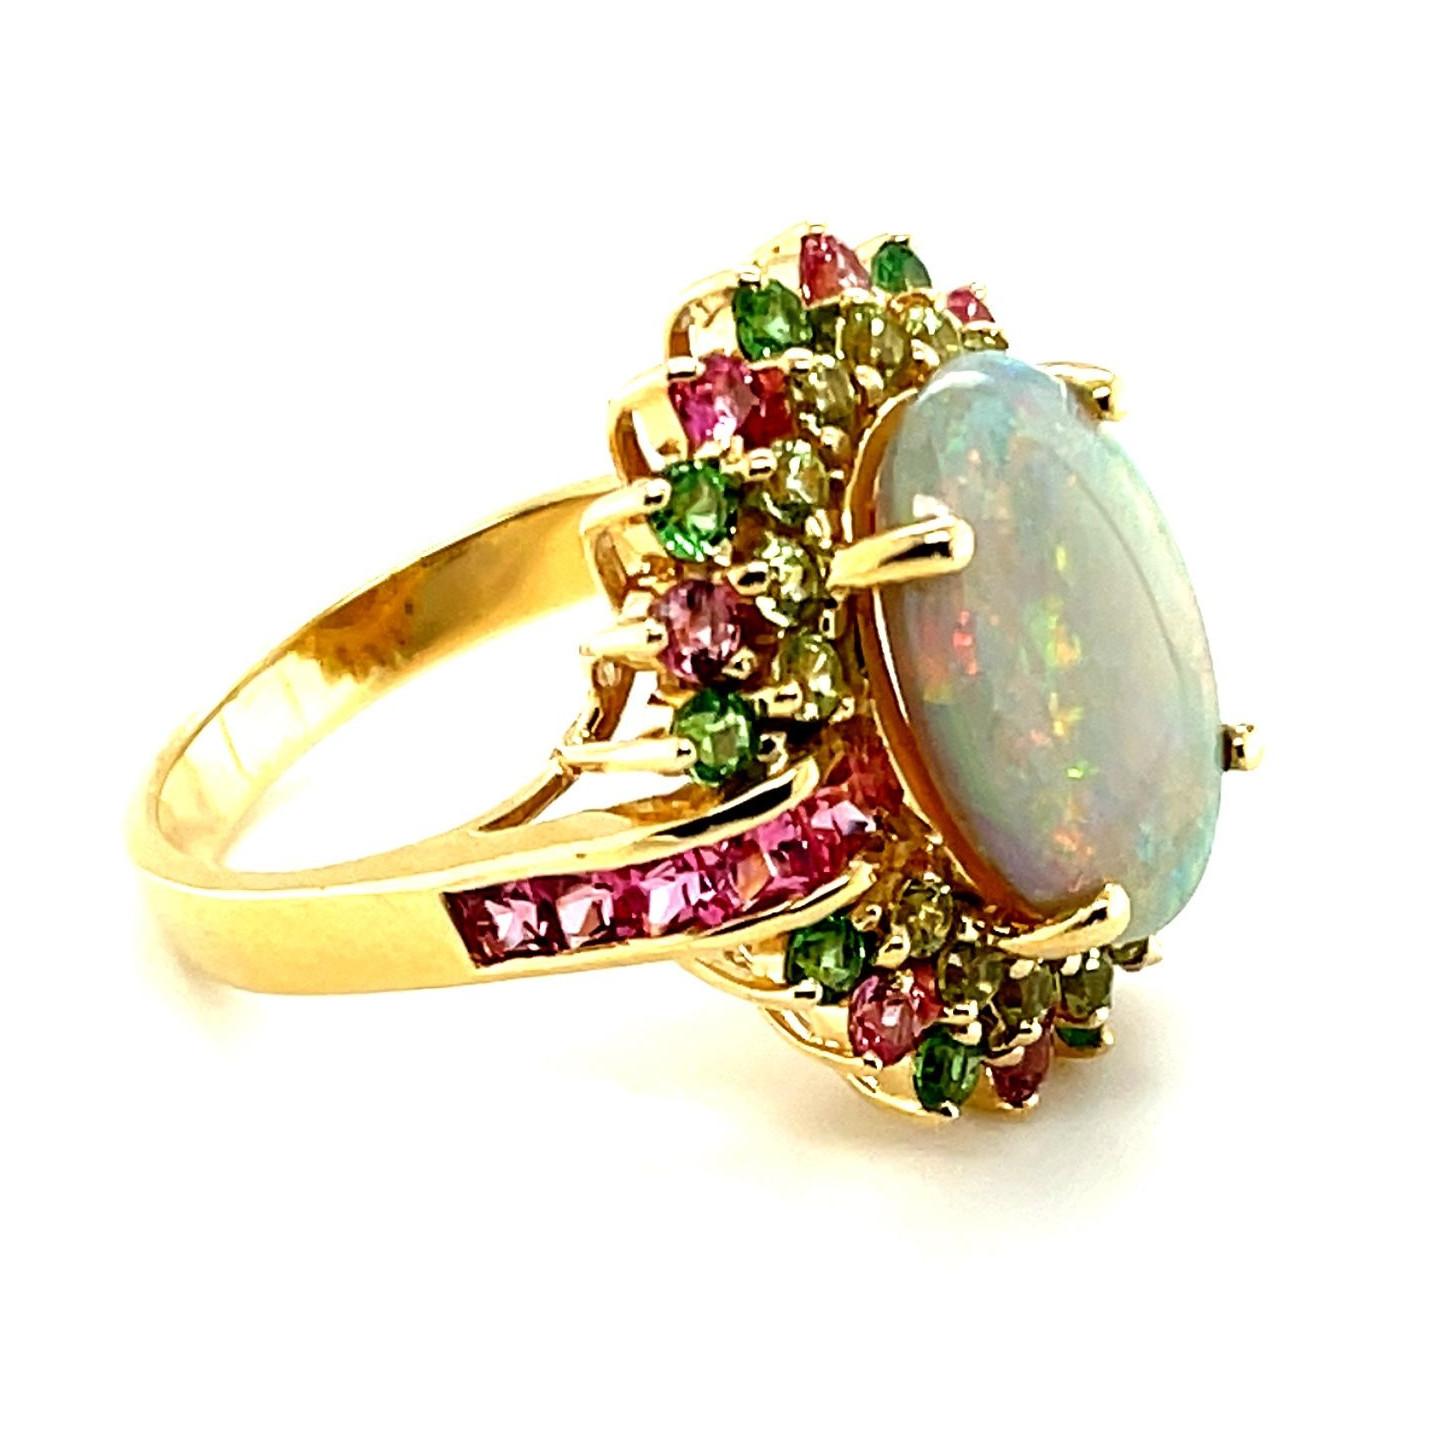 Ein wunderschöner, prismatischer Opal von 4,14 Karat steht im Mittelpunkt dieses witzigen Cocktailrings aus 14-karätigem Gelbgold, der mit Peridots, rosa Spinellen und Tsavorit-Granaten besetzt ist. Jeder der für diesen Ring ausgewählten Edelsteine